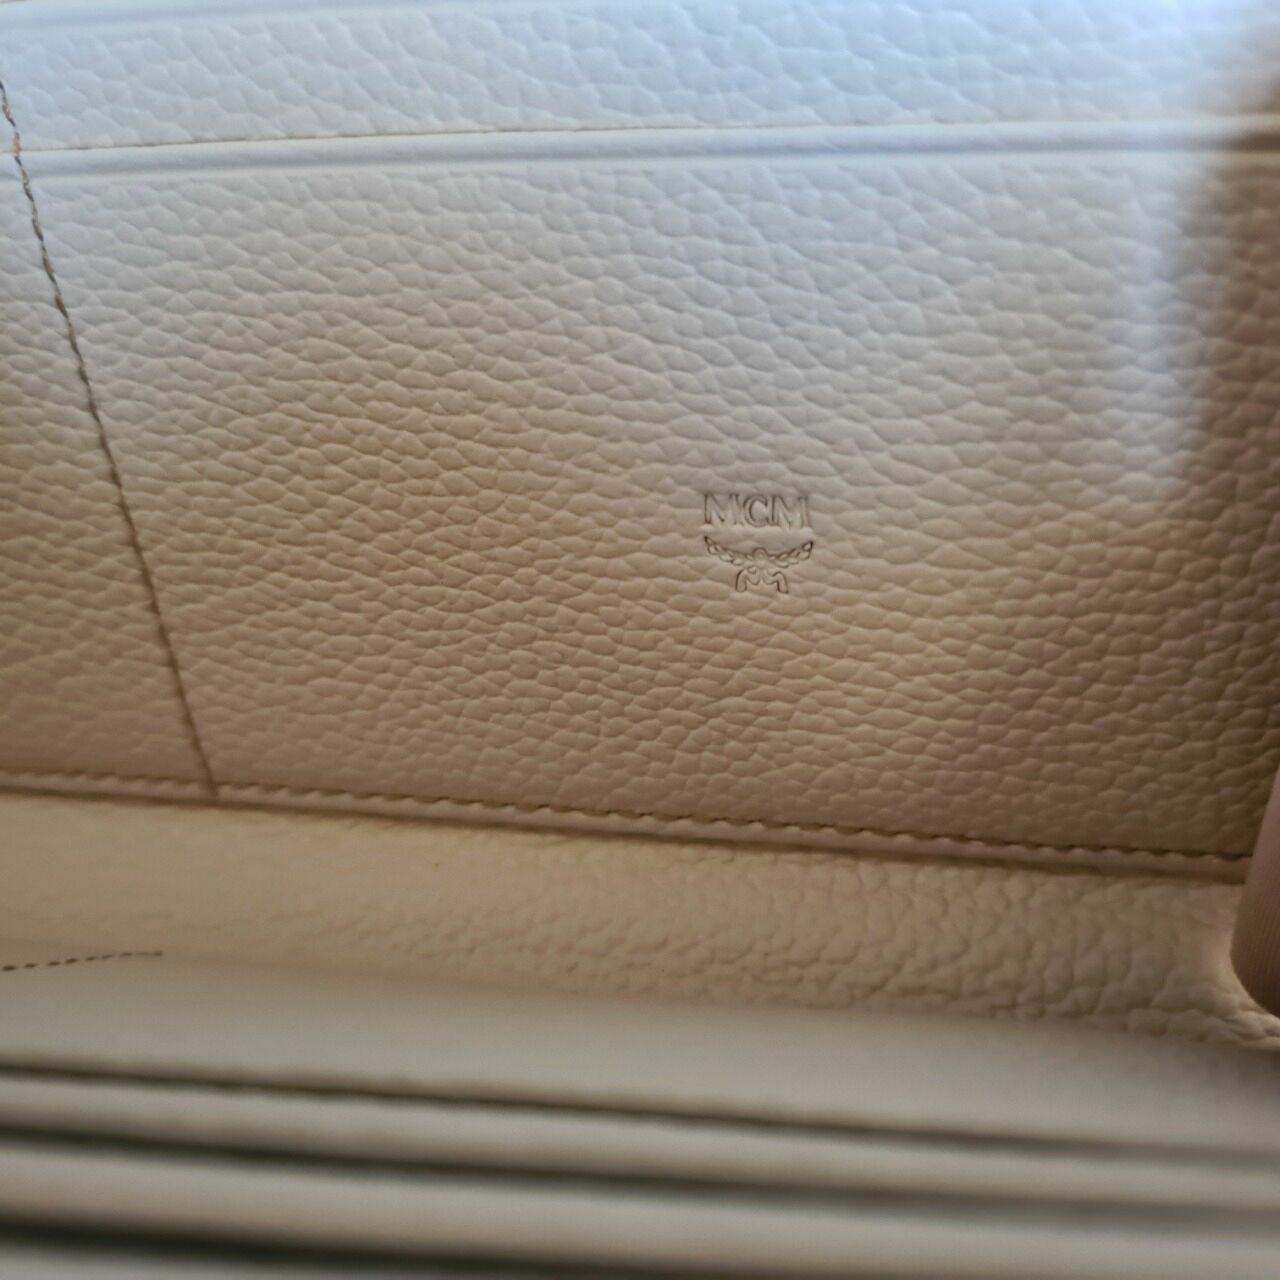 Mcm Aren Large Beige Visetos Leather Multifunctional Zip Around Clutch Wallet